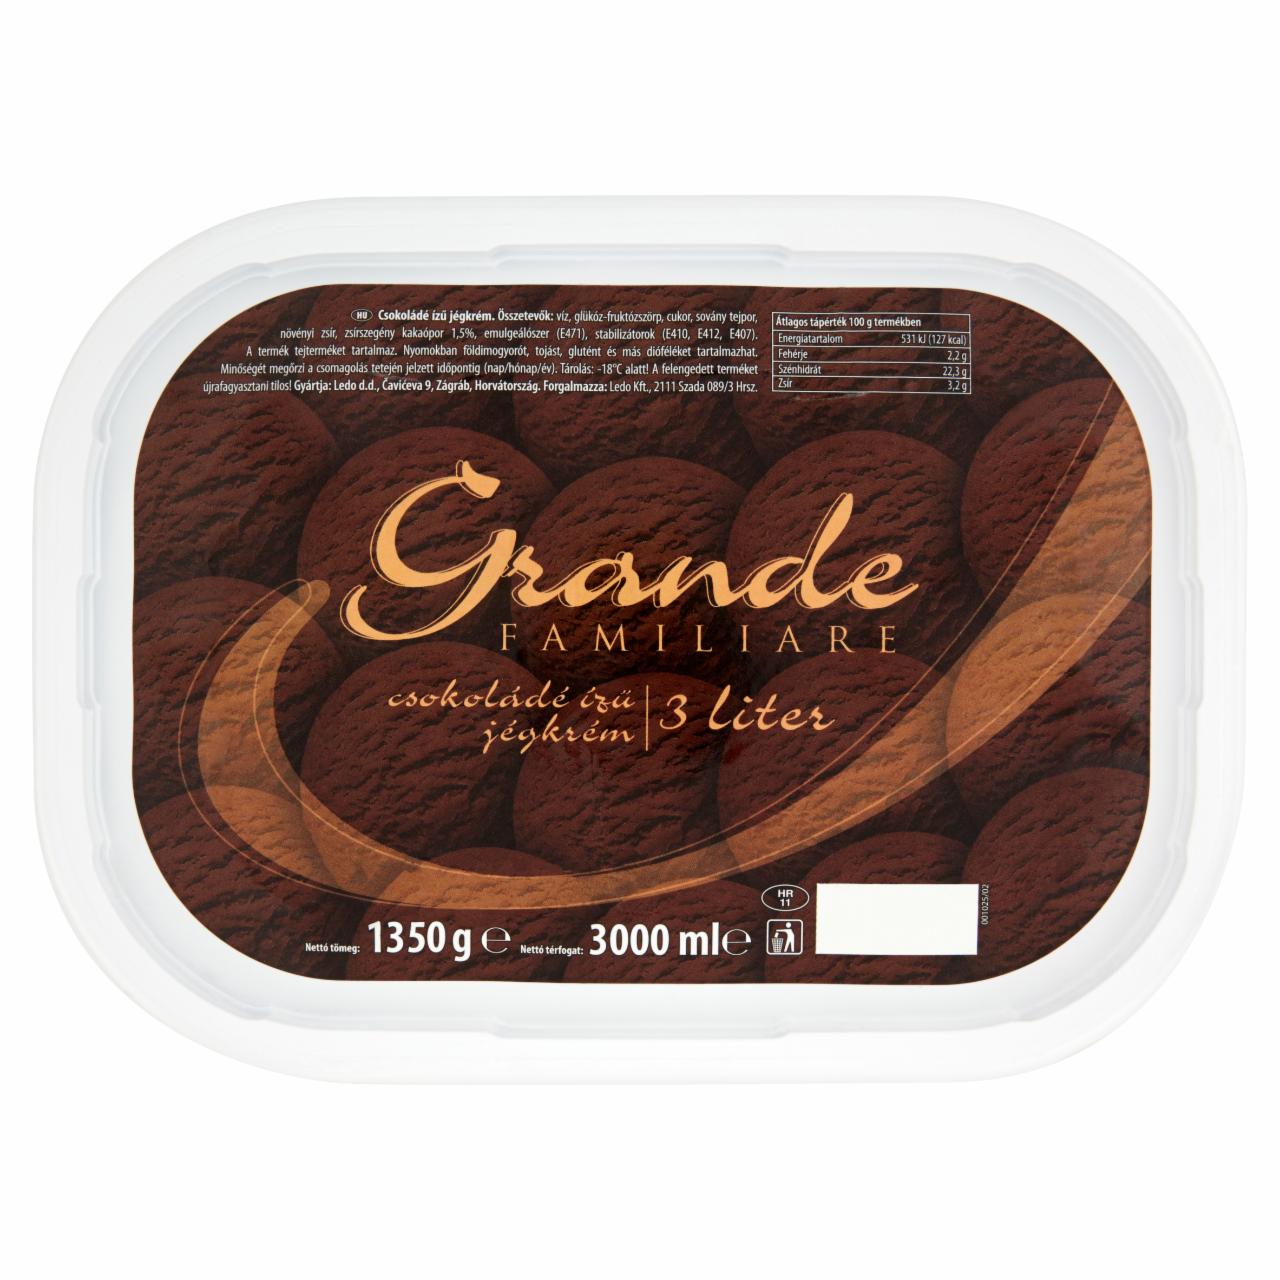 Képek - Ledo Grande Familiare csokoládé ízű jégkrém 3 l